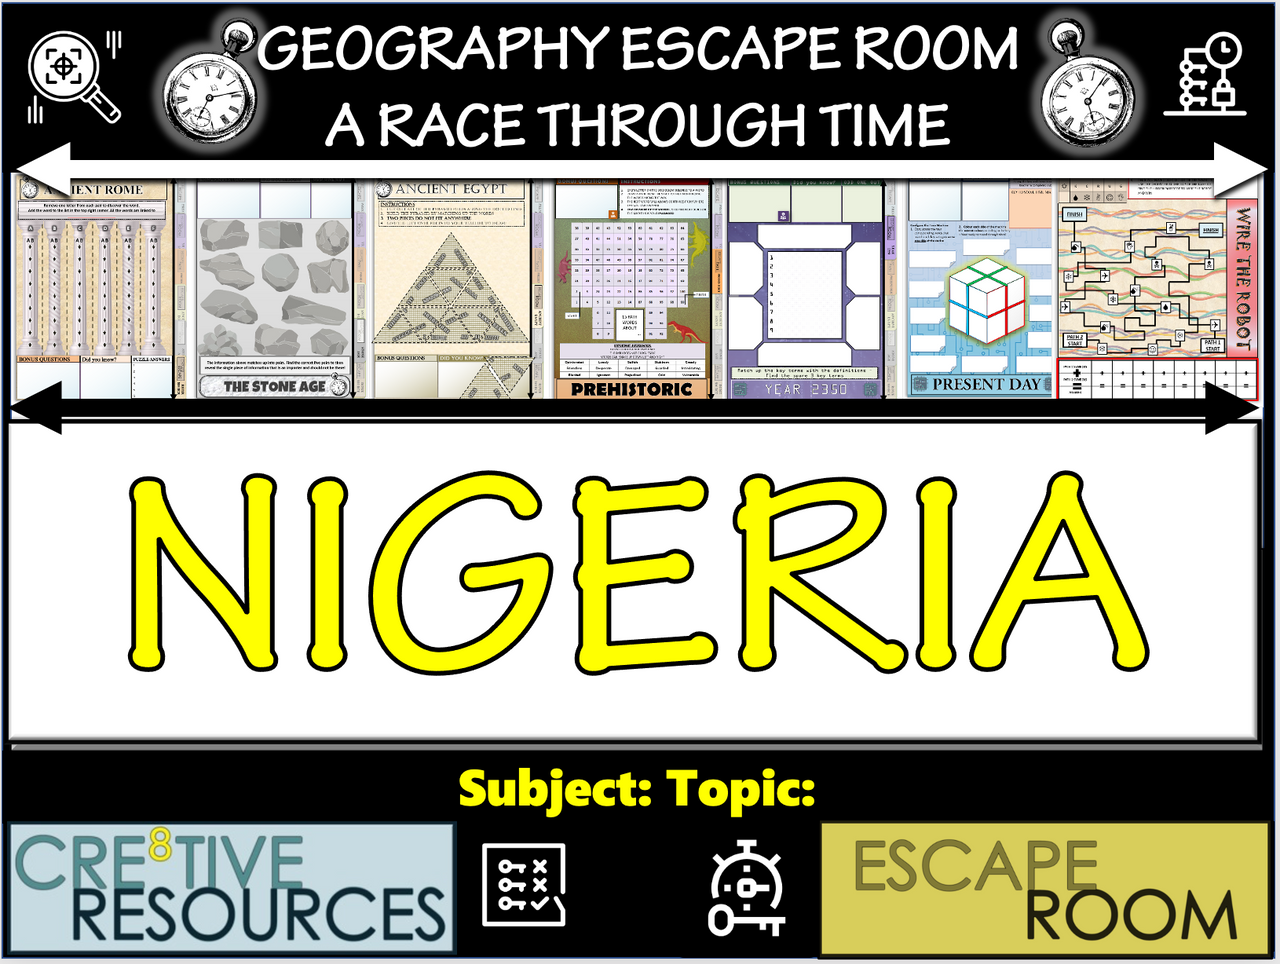 Nigeria - Geography Escape Room